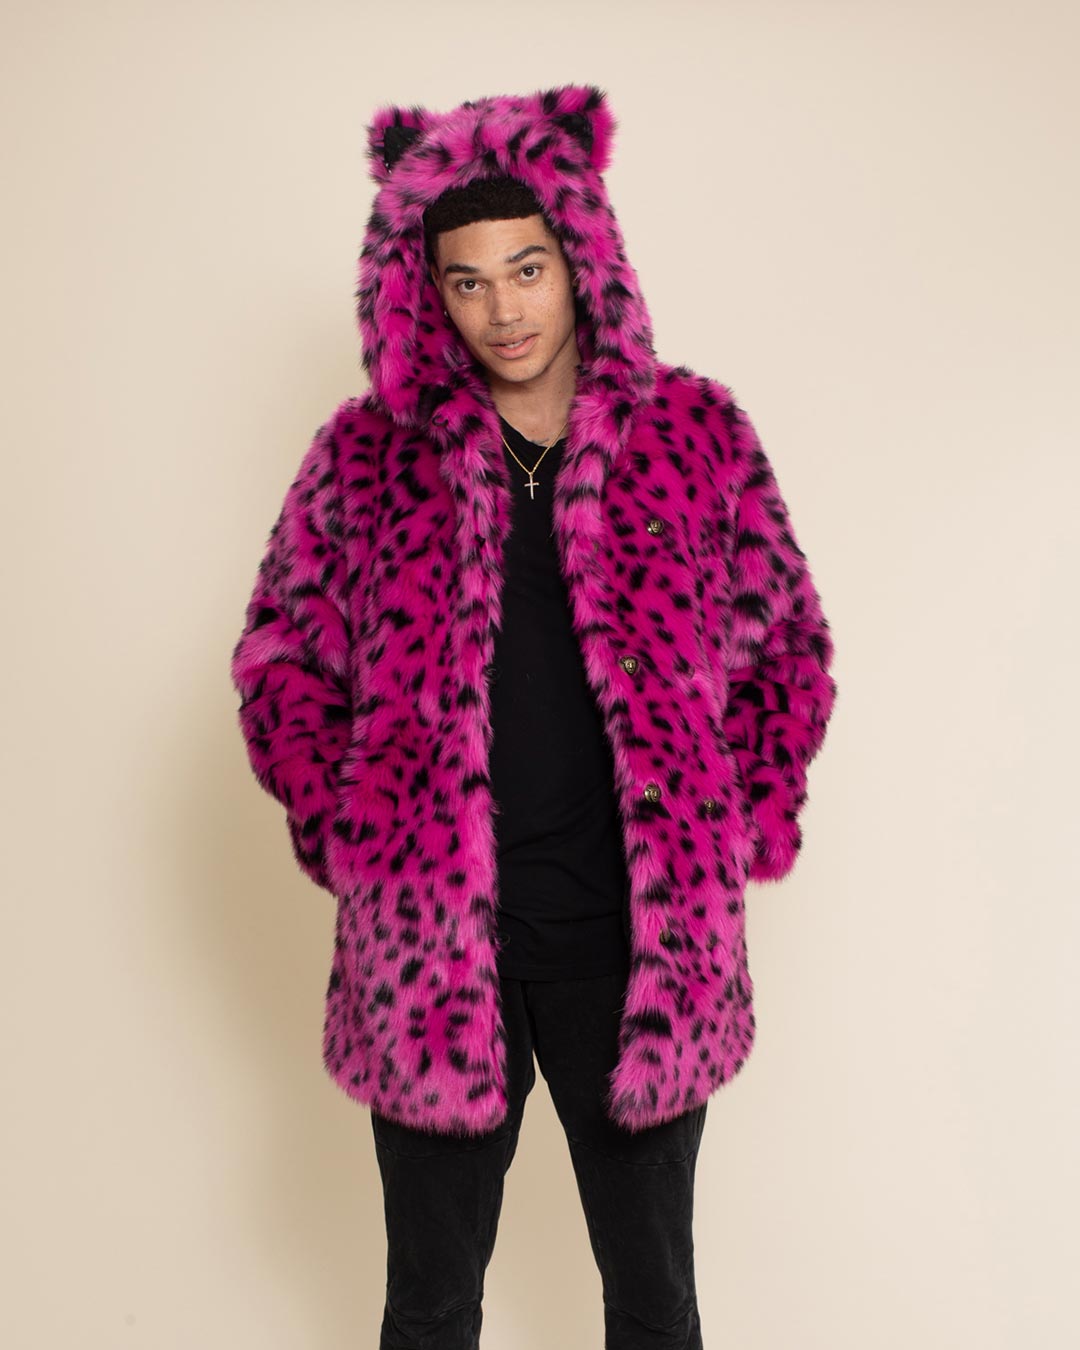 Men's Lounge Shorts - Pink Cheetah